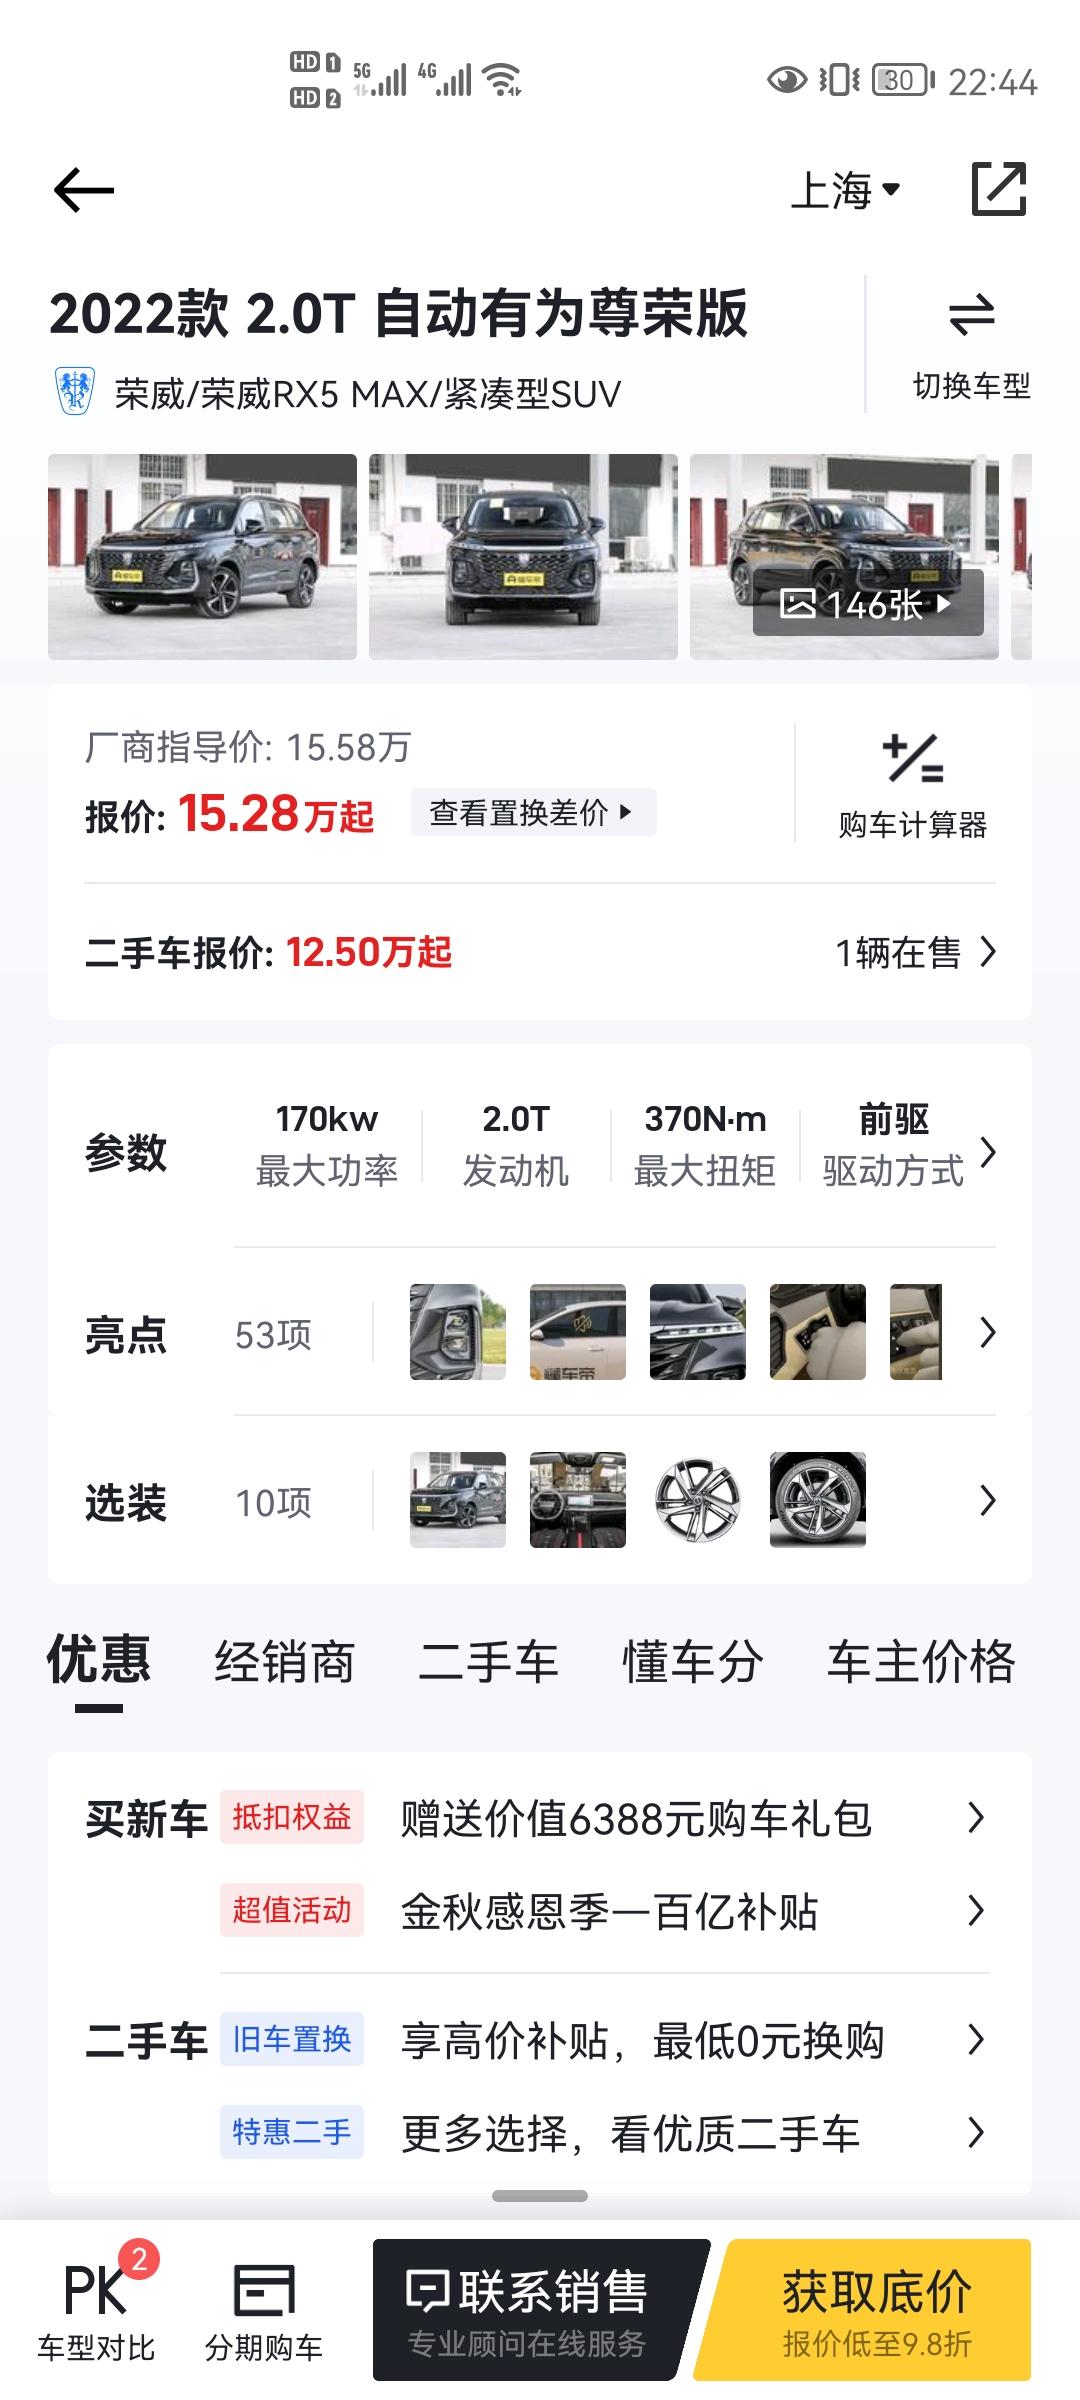 荣威RX5 MAX 咨询一下，想买自动有为尊荣版15.58万这一款，在上海最多可以优惠多少，亲们的价格可以分享一下吗